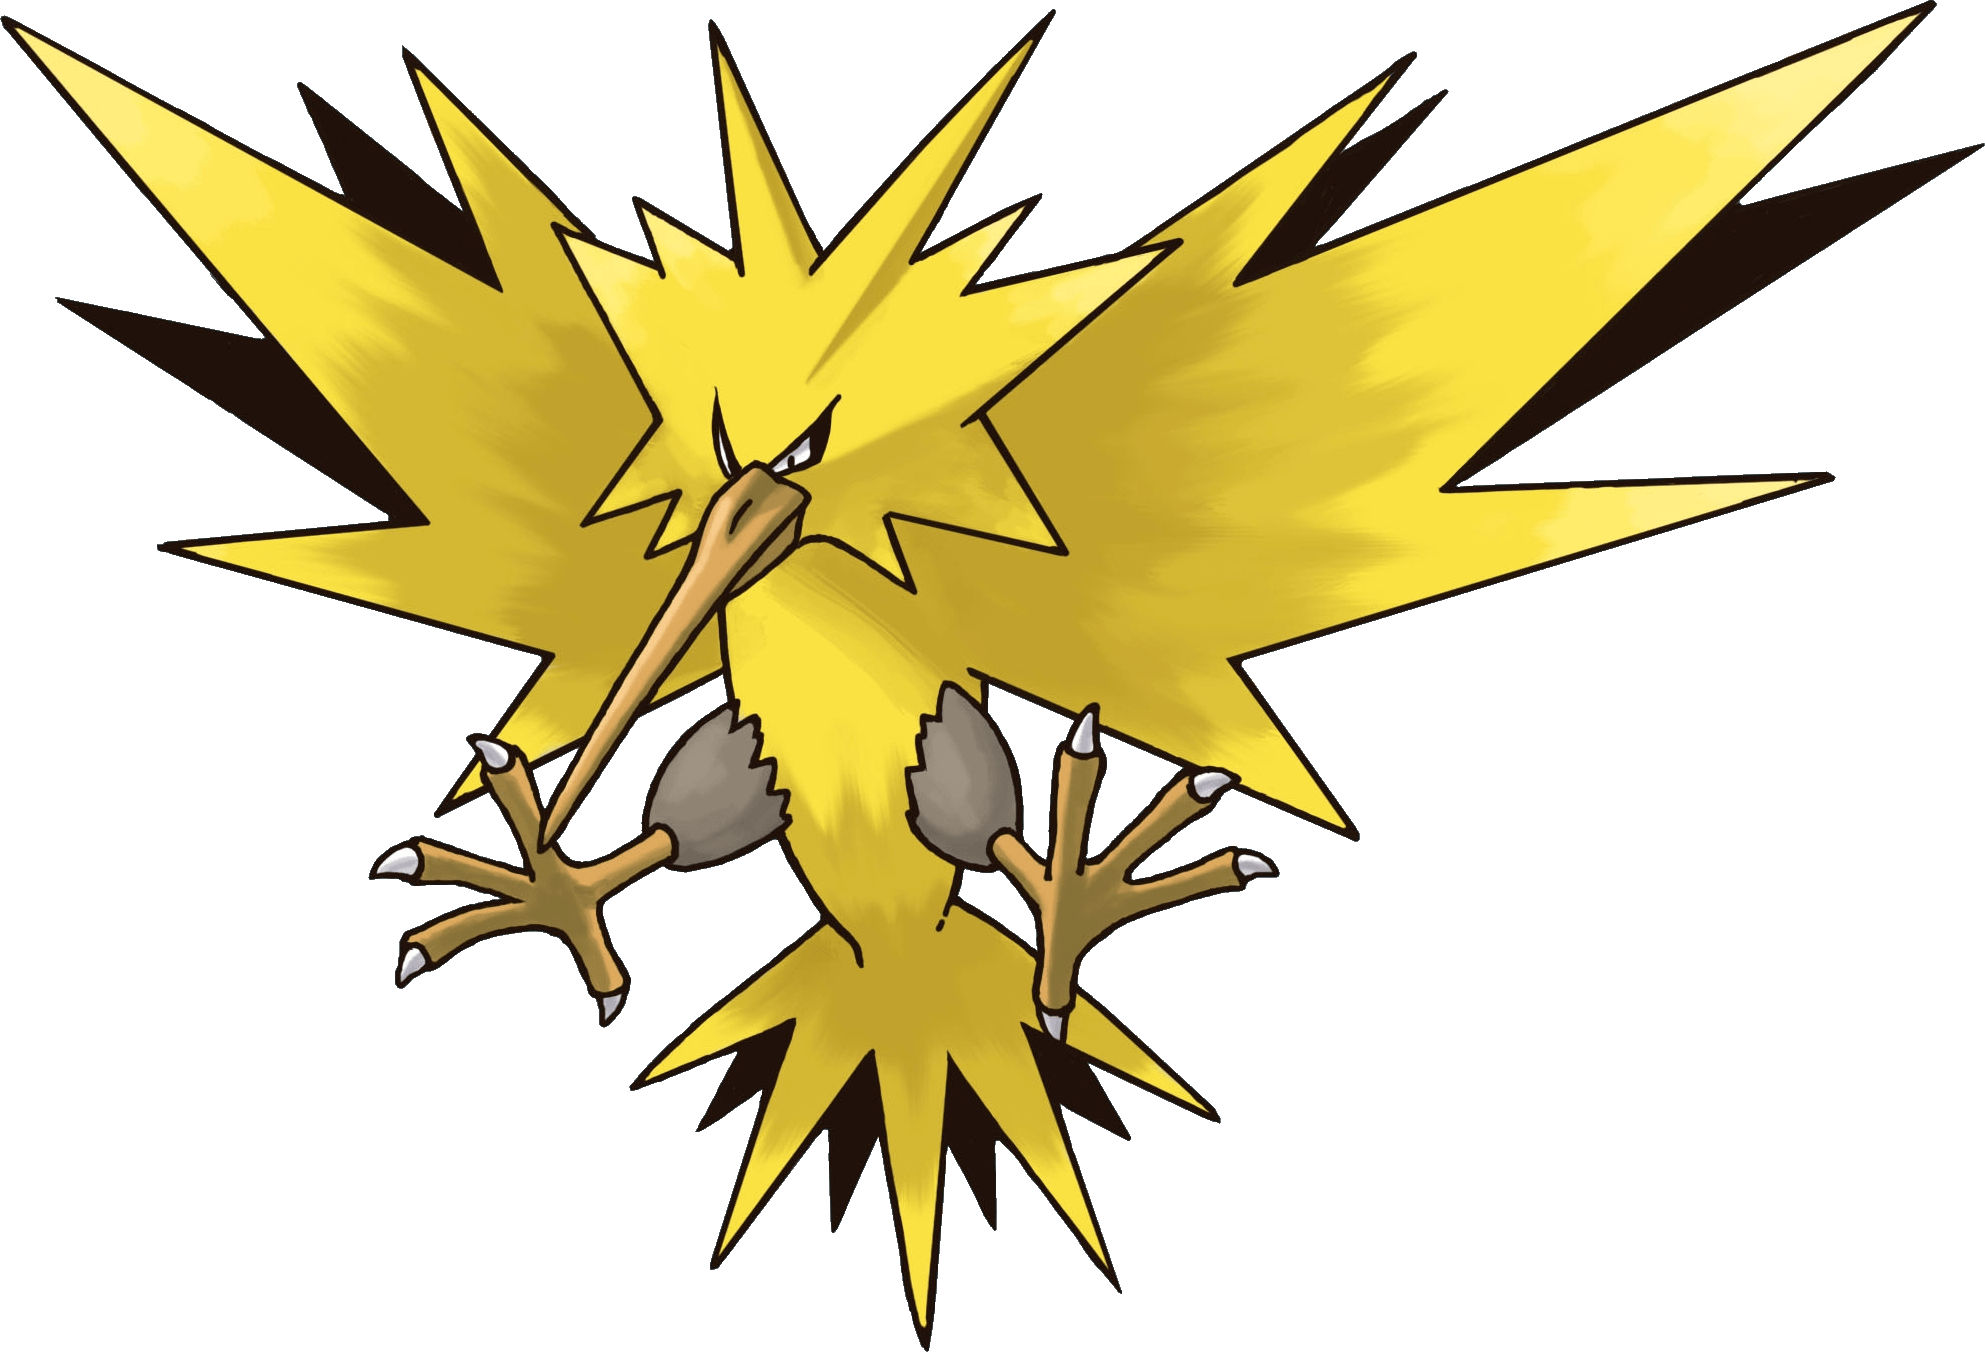 Pokémon GO Pokémon FireRed and LeafGreen Zapdos Moltres